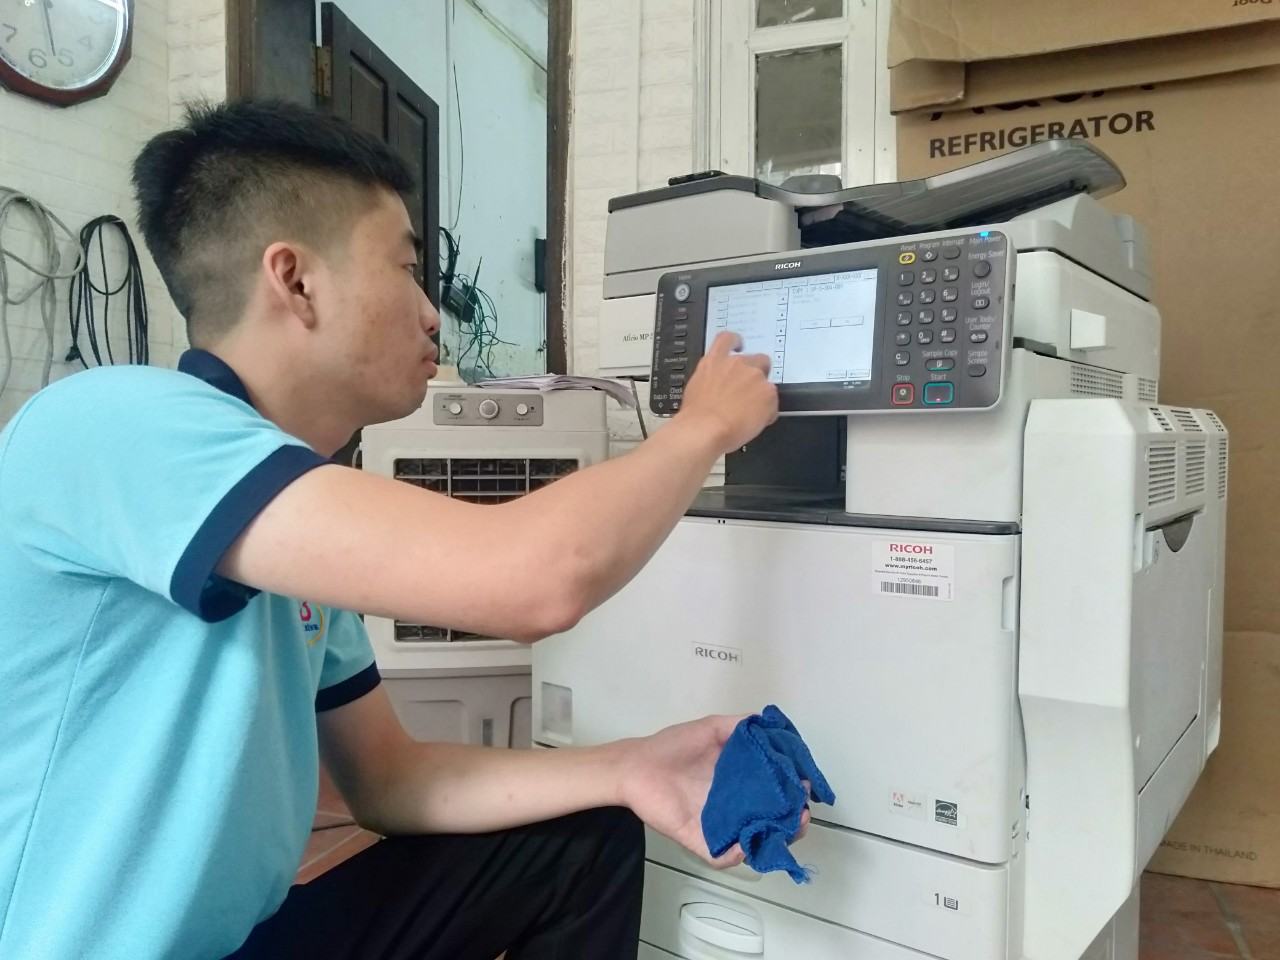 Quy trình bảo trì và sửa máy photocopy - máy in chuyên nghiệp chỉ có tại Thanh Bình